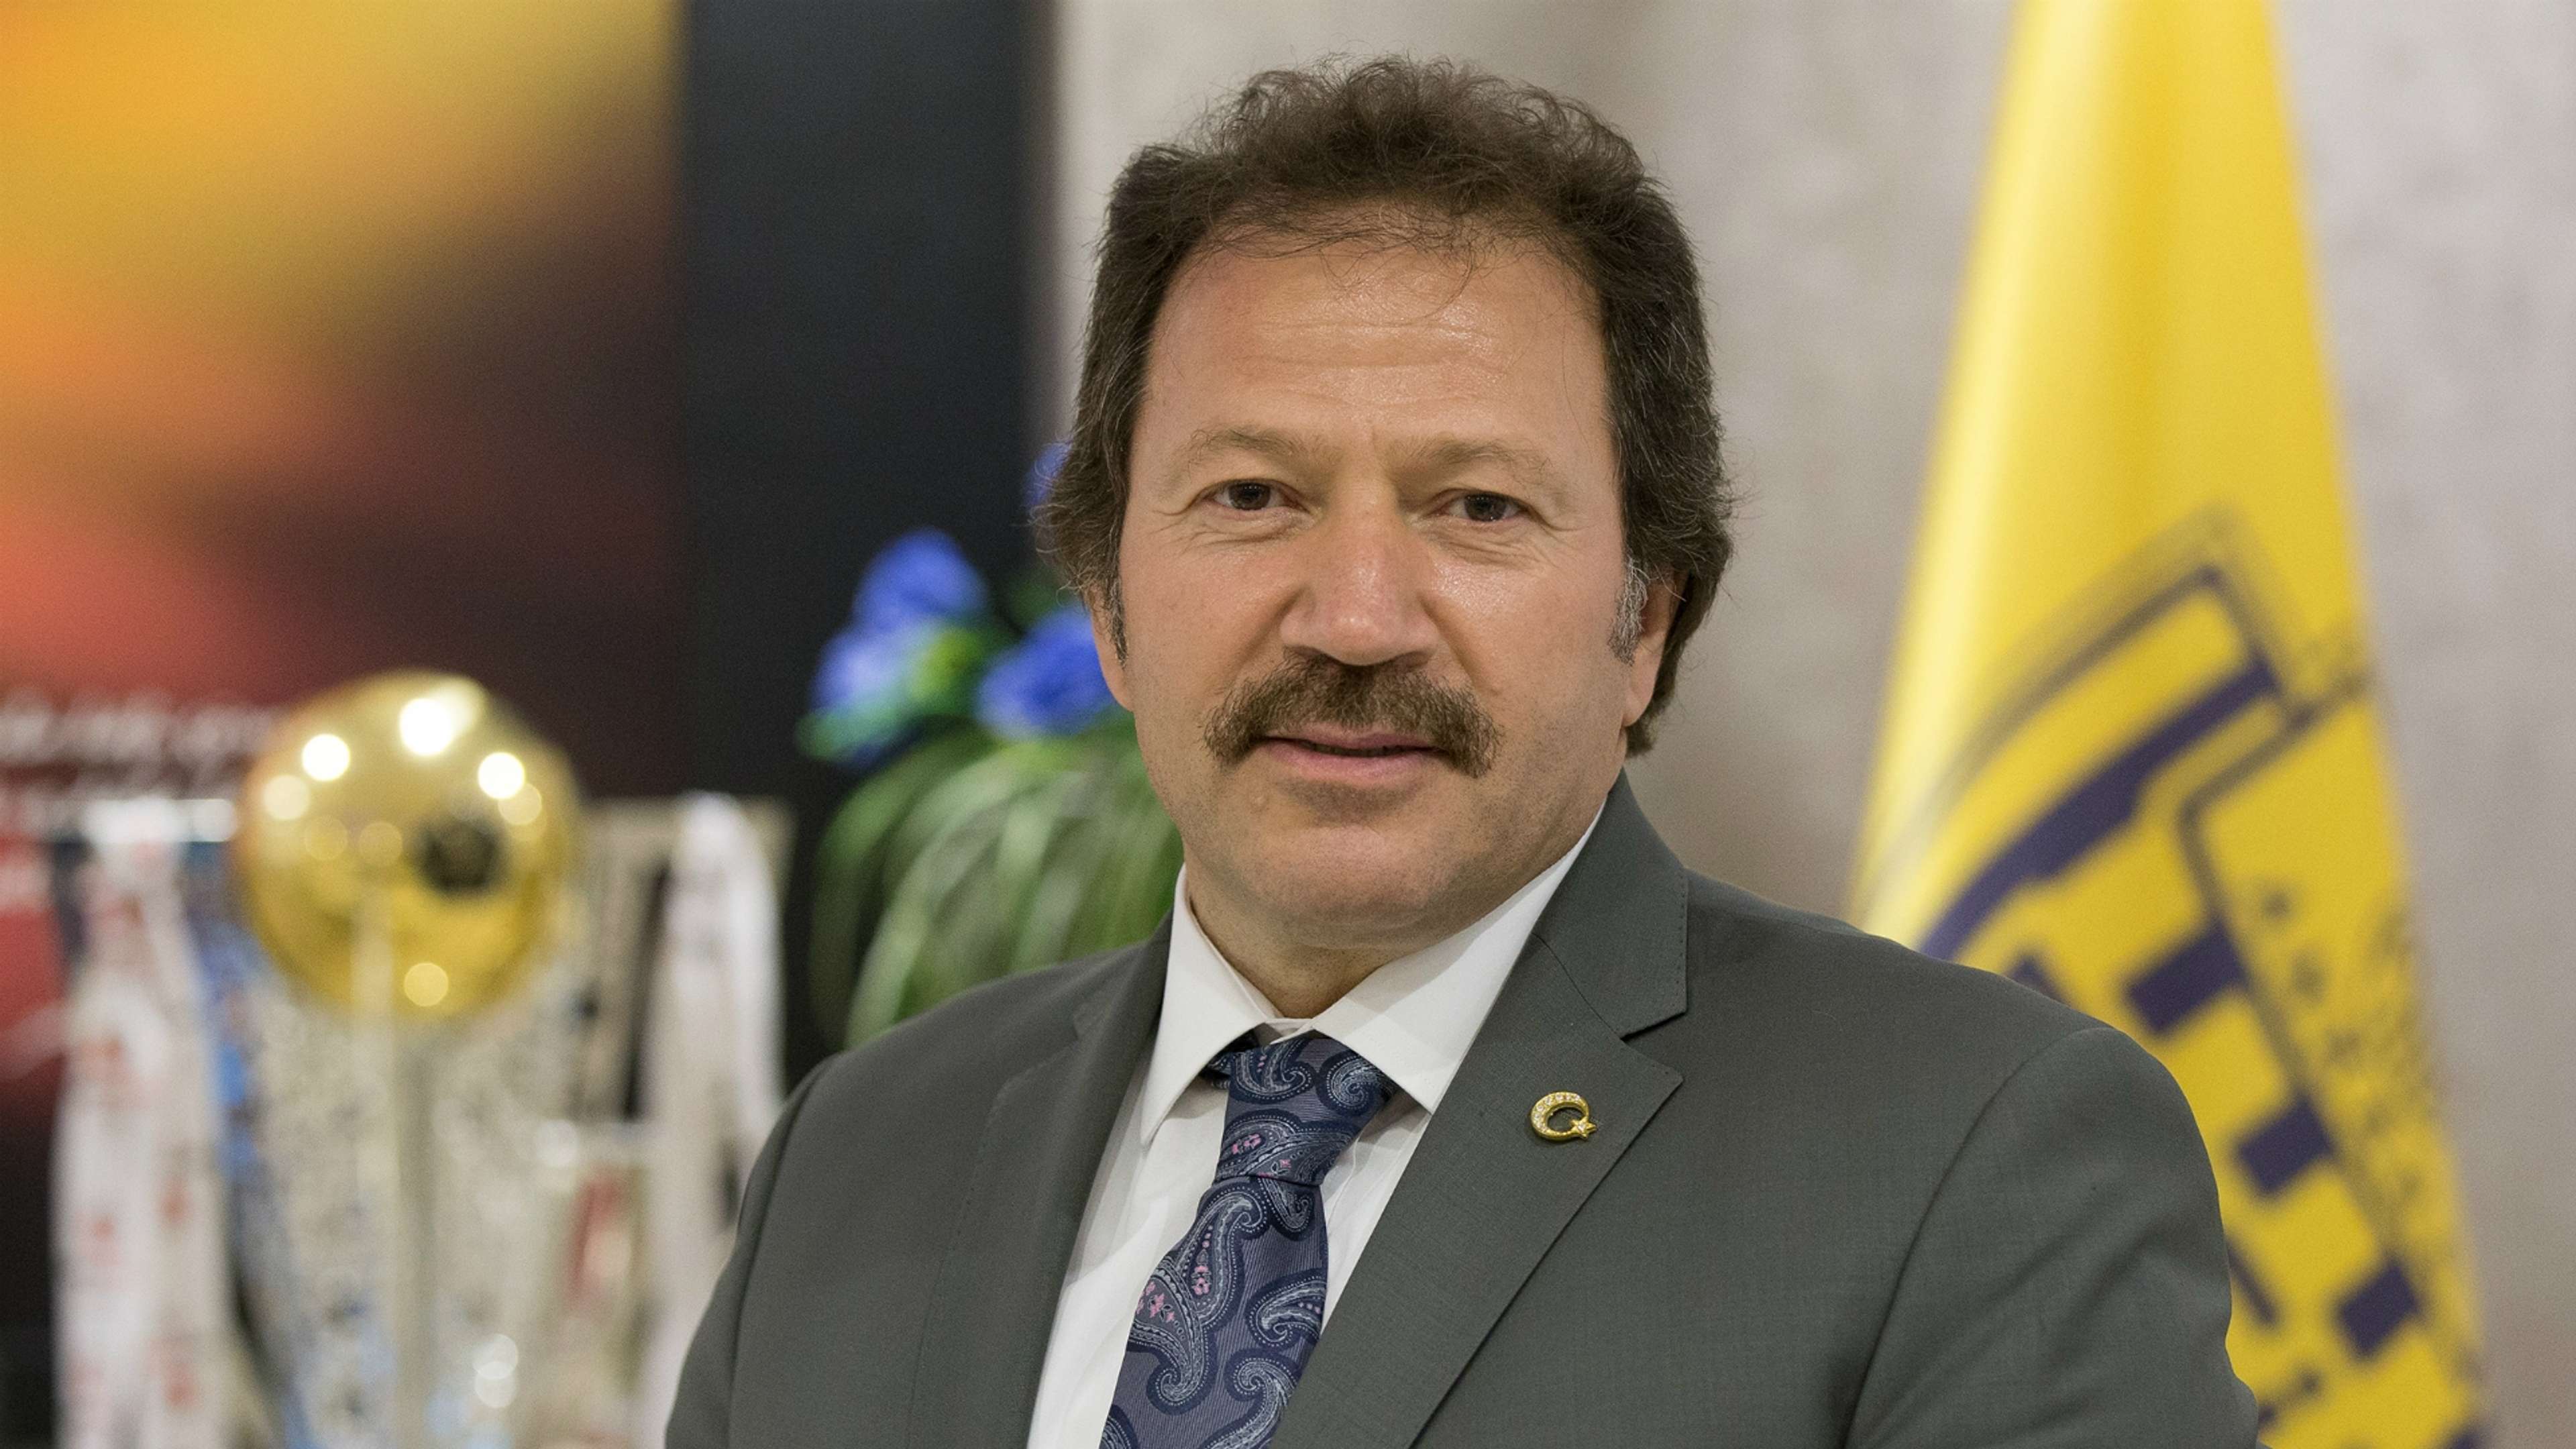 Mehmet Yiginer Ankaragucu